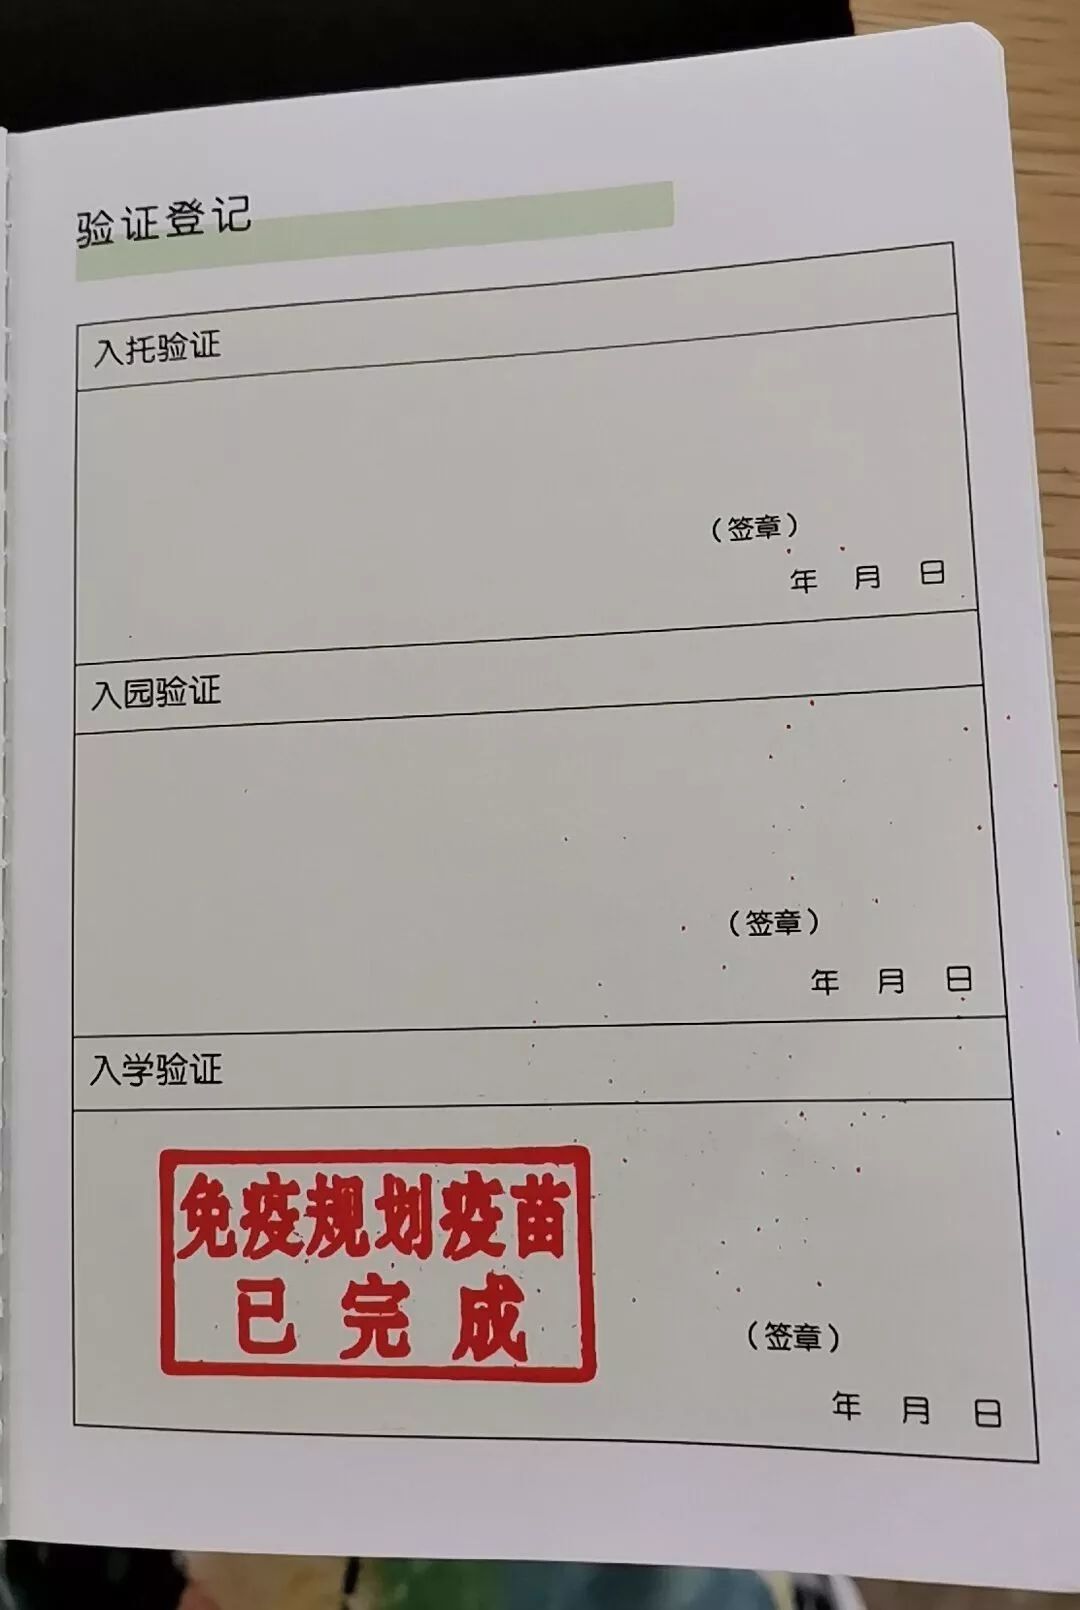 广州入学预防接种证明图片